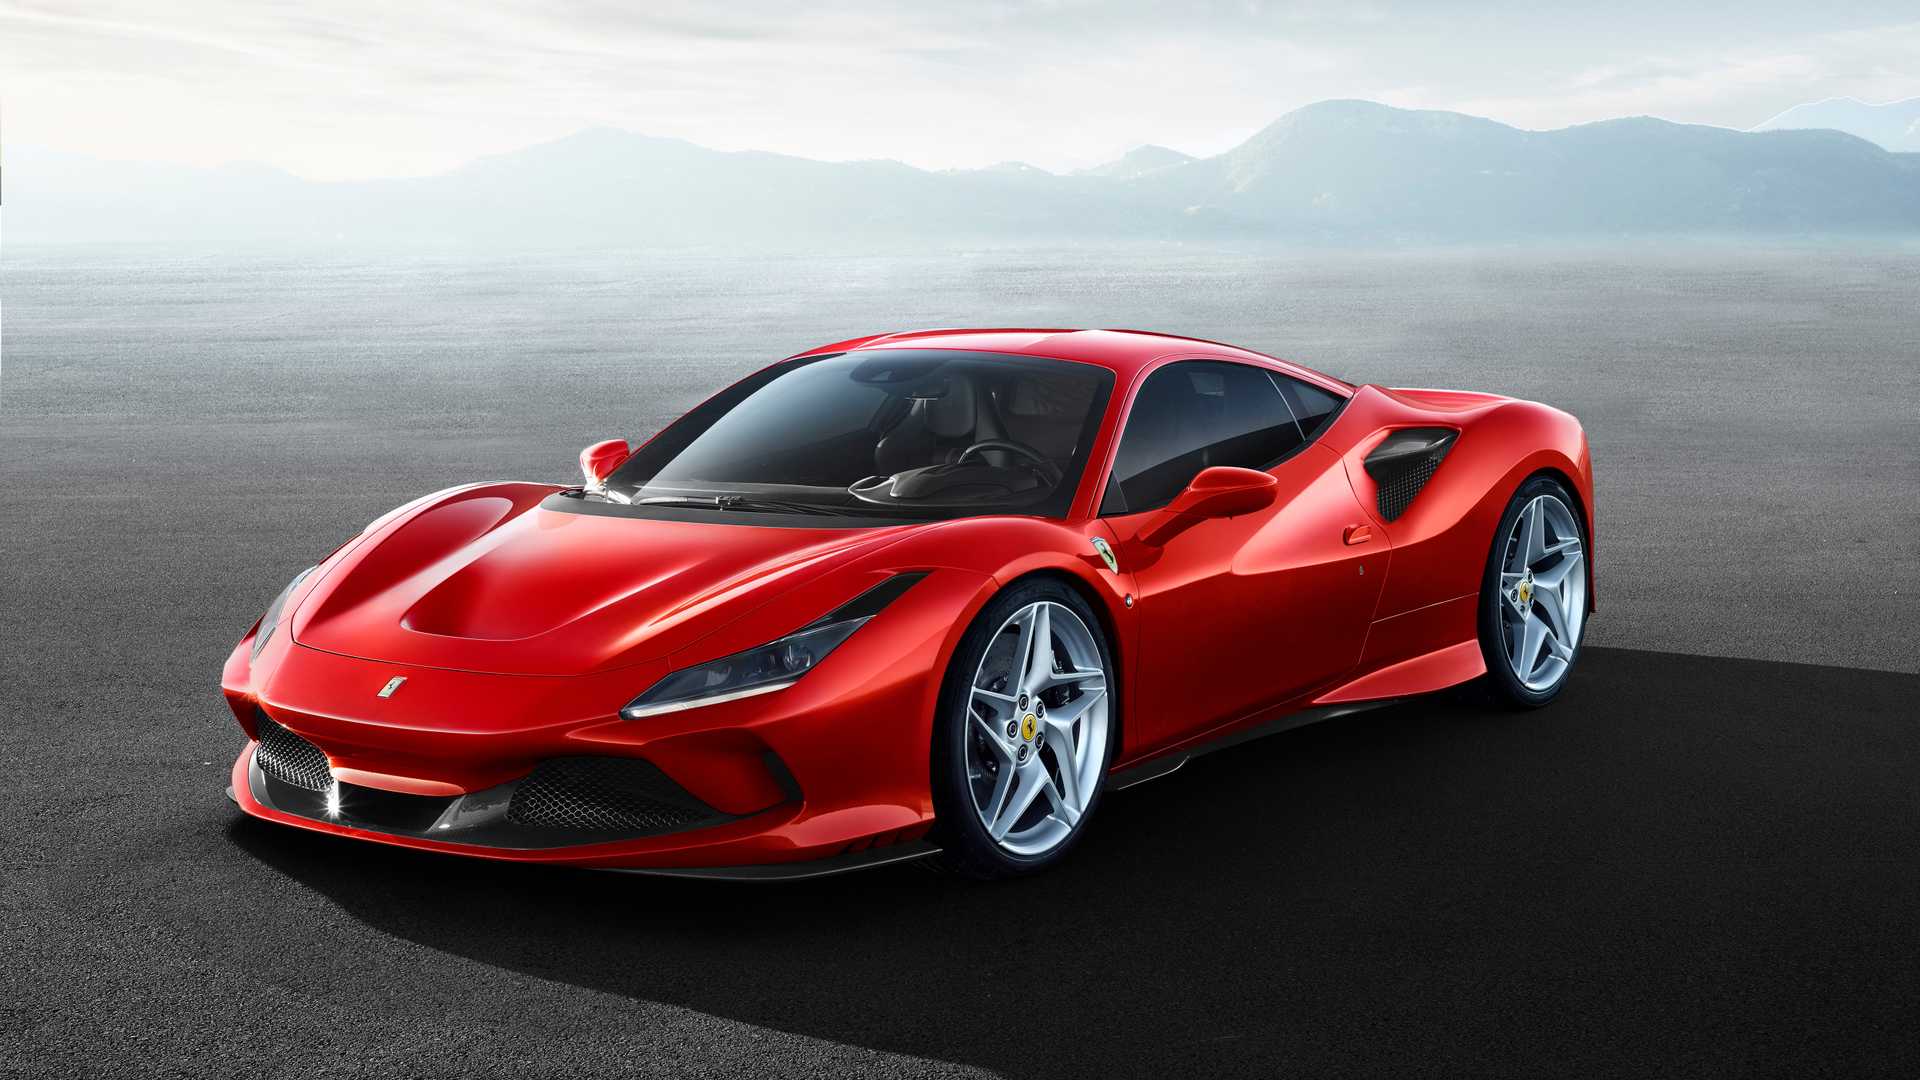 UPDATE: Ferrari SF90 Stradale Hybrid Leaks Ahead of Debut, Looks